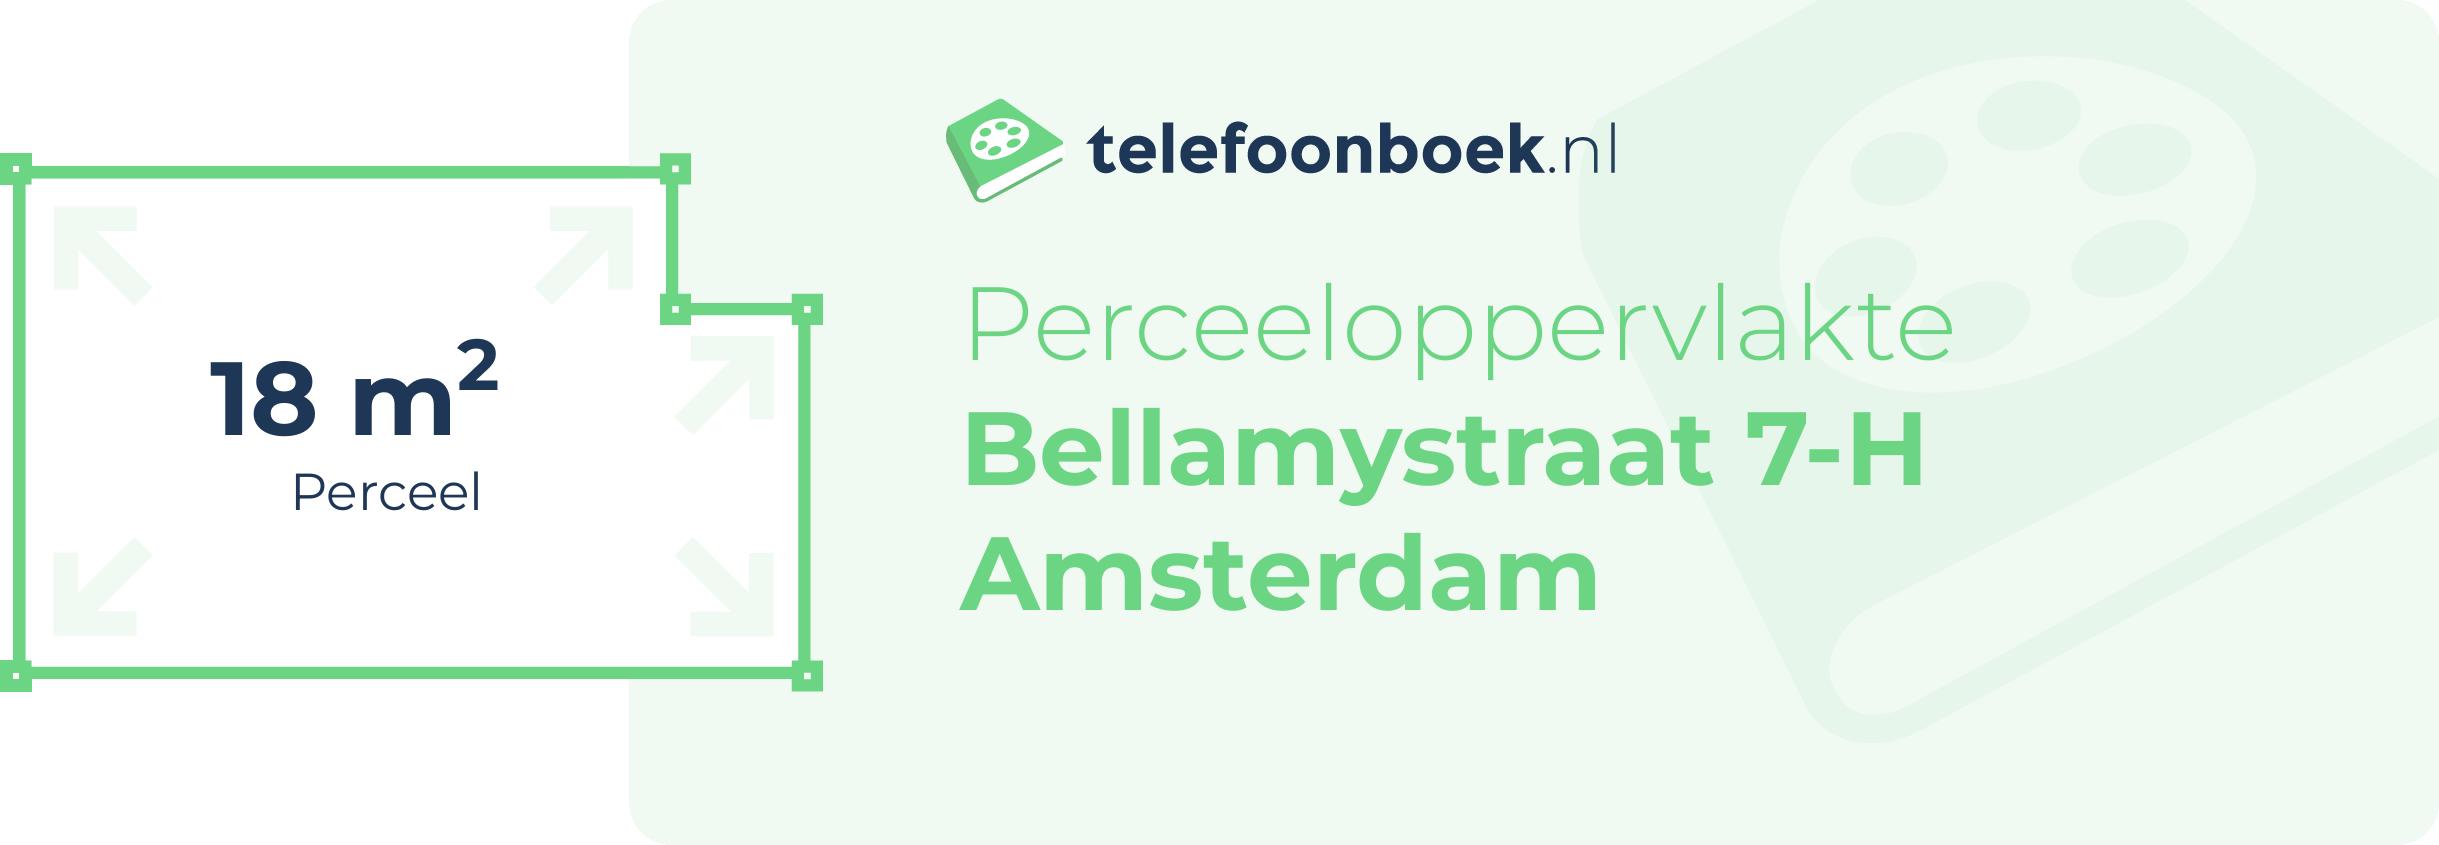 Perceeloppervlakte Bellamystraat 7-H Amsterdam